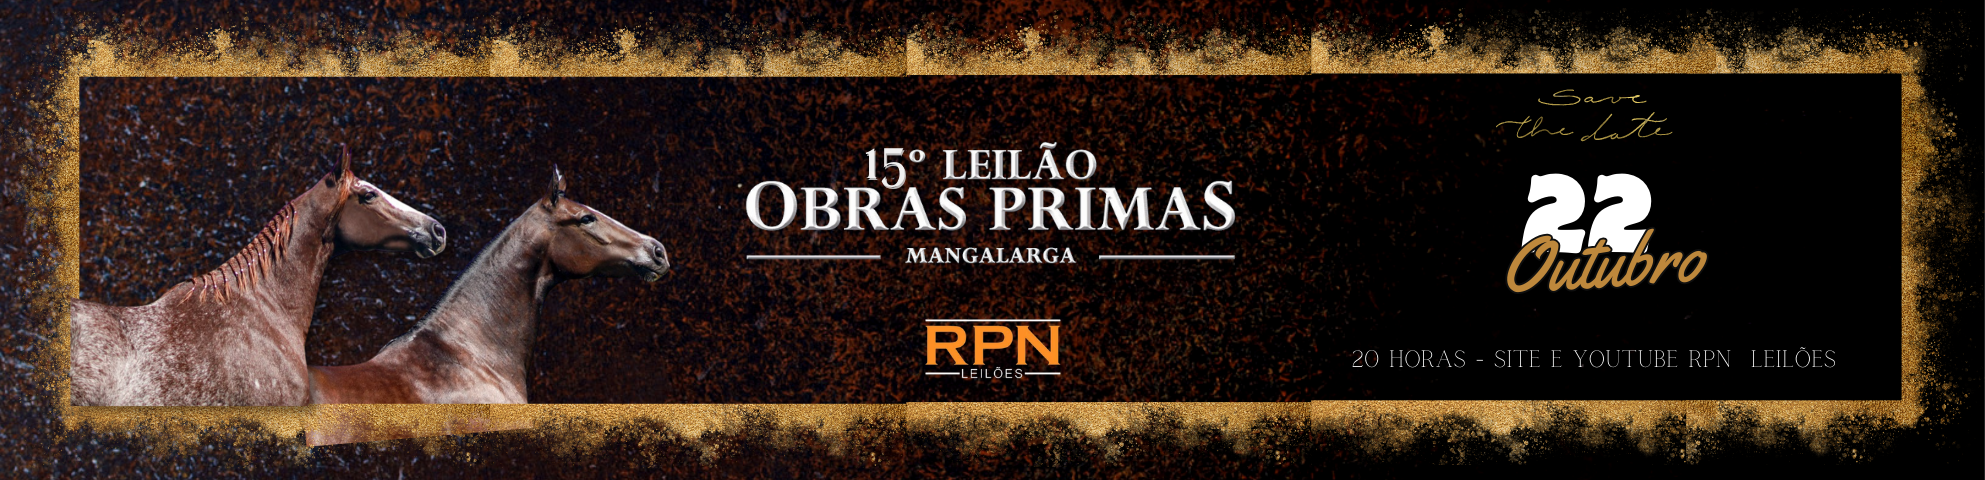 Slide 15° LEILÃO OBRAS PRIMAS MANGALARGA (LEILÃO VIRTUAL)